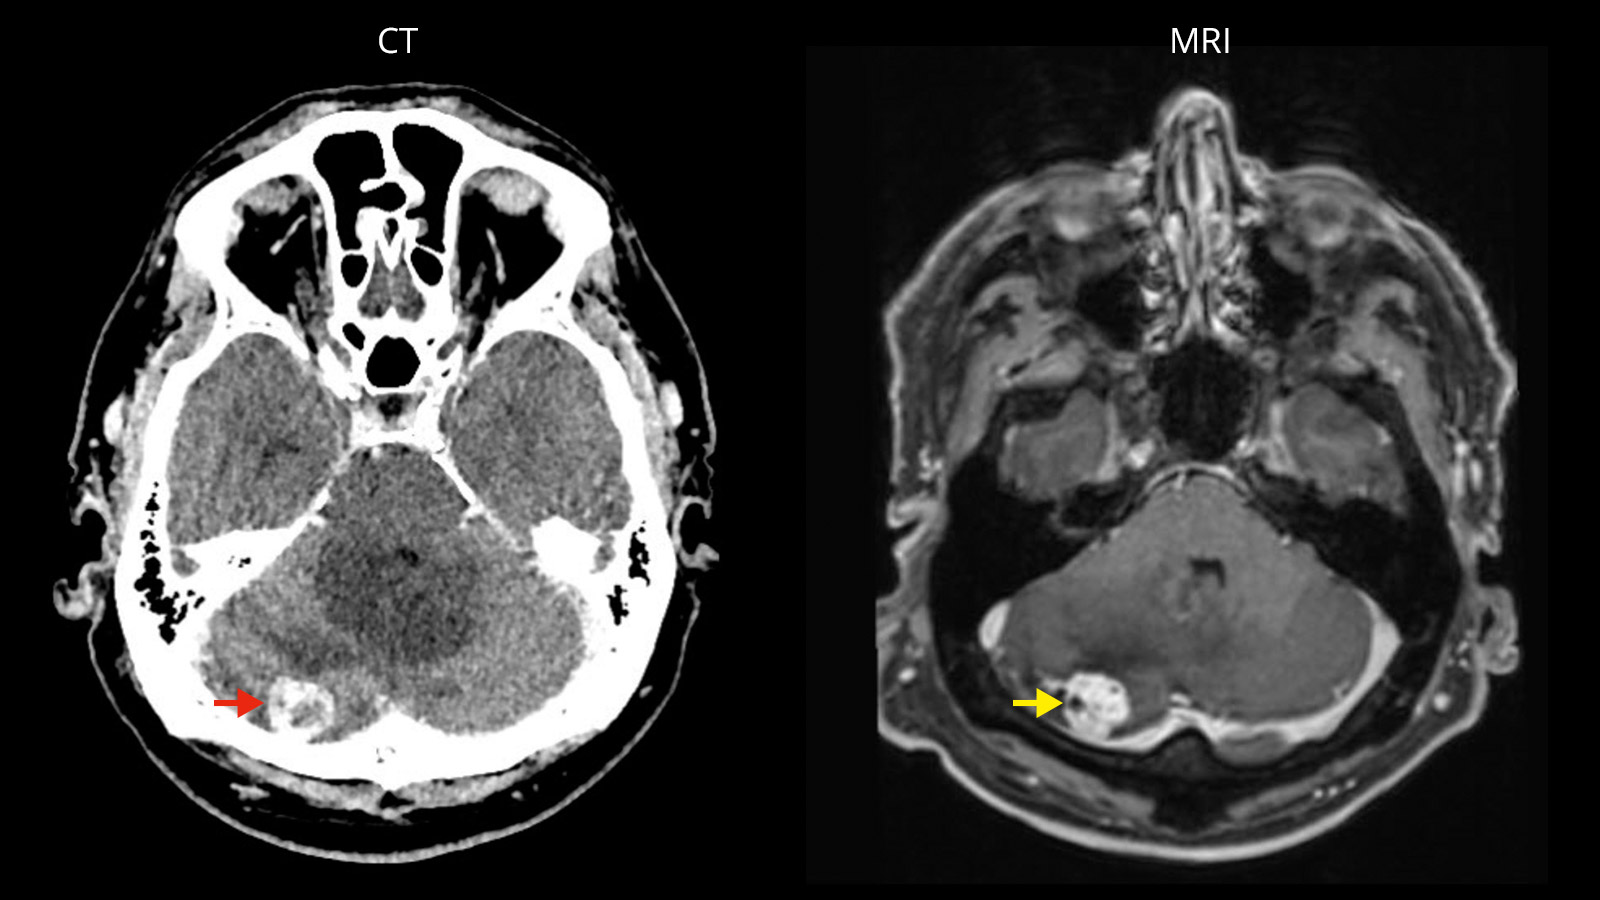 A gauche, image CT de métastase cérébelleuse, à droite, même métastase sur l'image IRM.